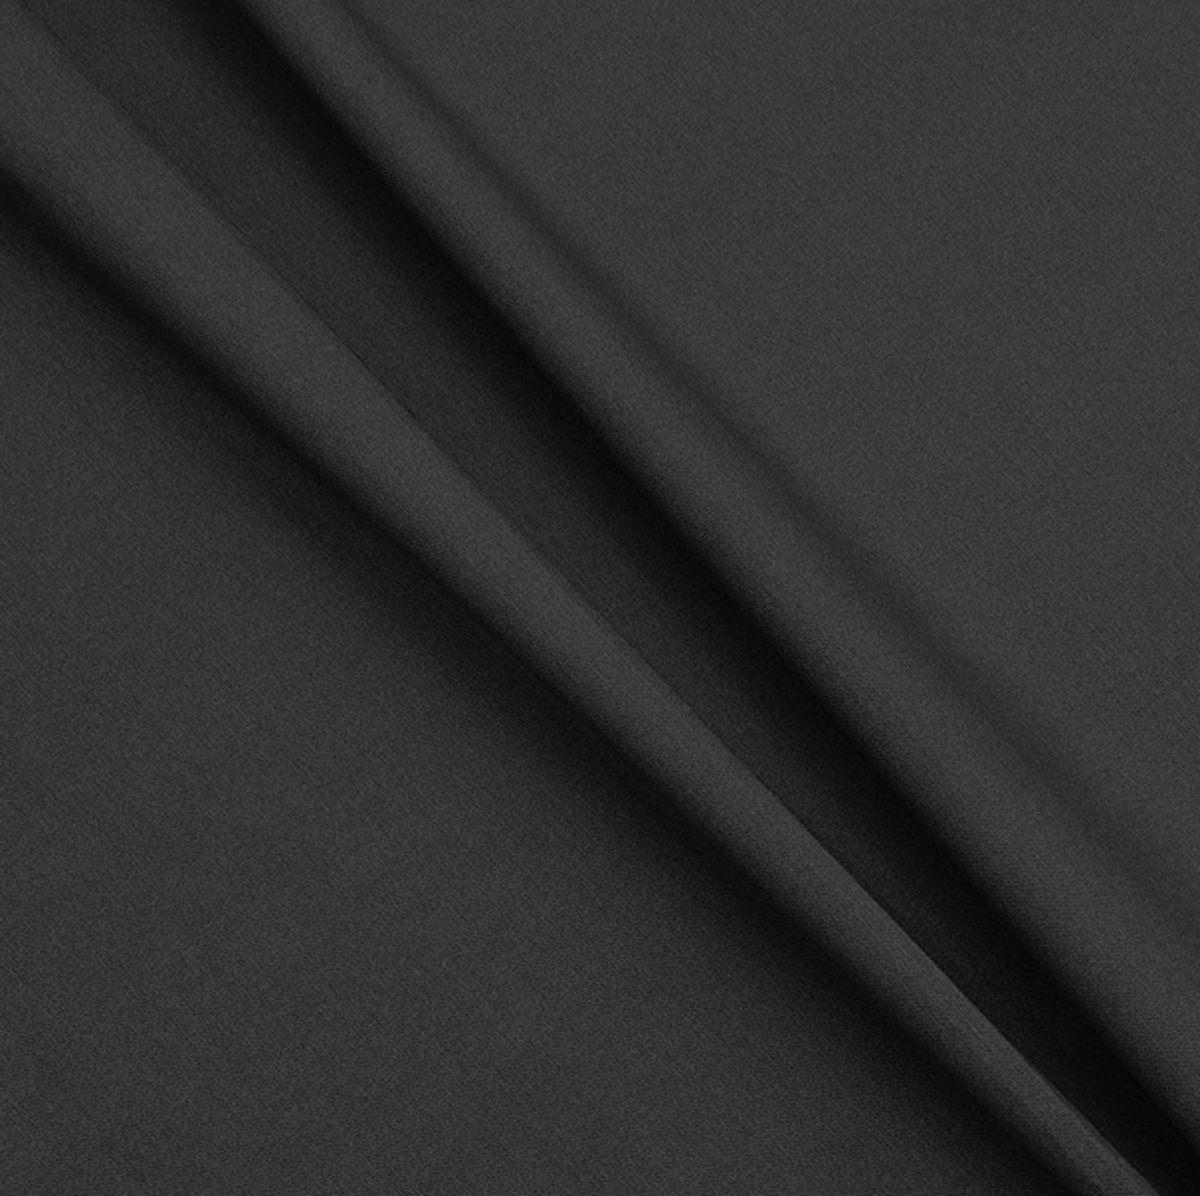 Gecoat tafelkleed/tafellinnen - Afwasbaar - Op koker geleverd - kleur: effen zwart - 240x140cm